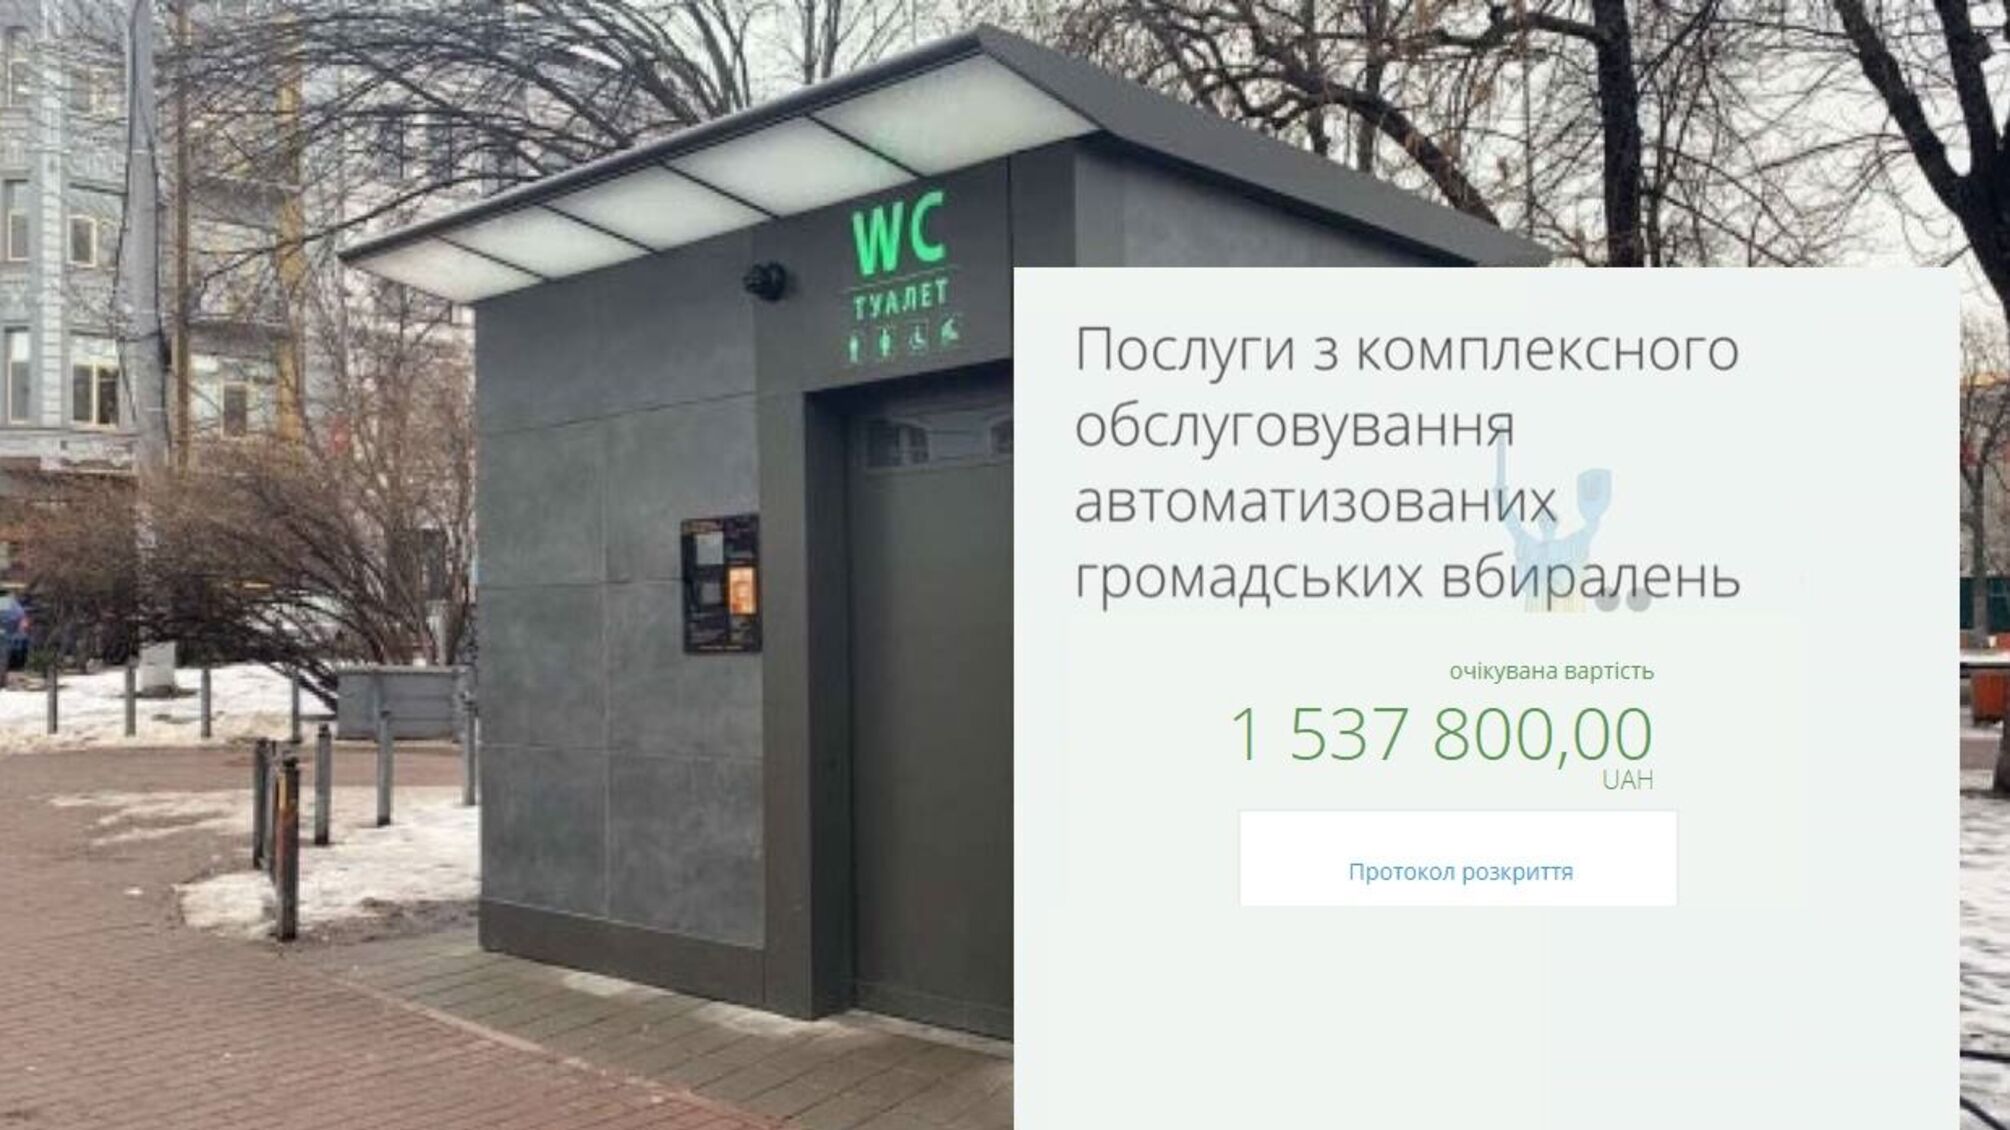 Киев хочет «спустить на унитазы» 1,5 миллиона гривен